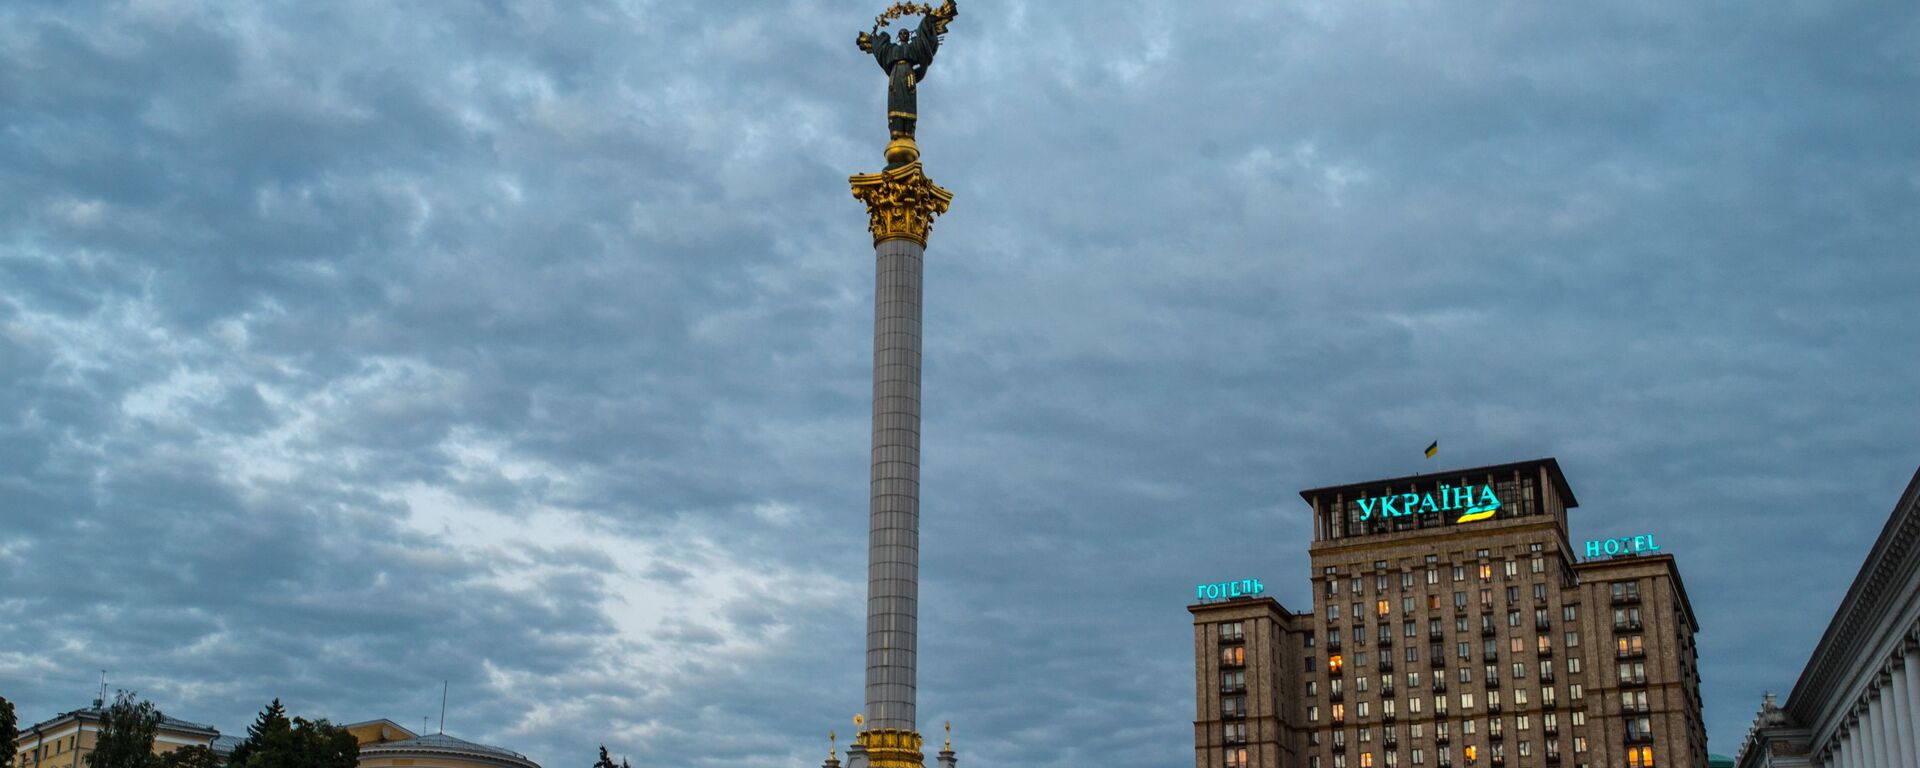 Монумент Независимости Украины в Киеве - Sputnik Таджикистан, 1920, 13.01.2021